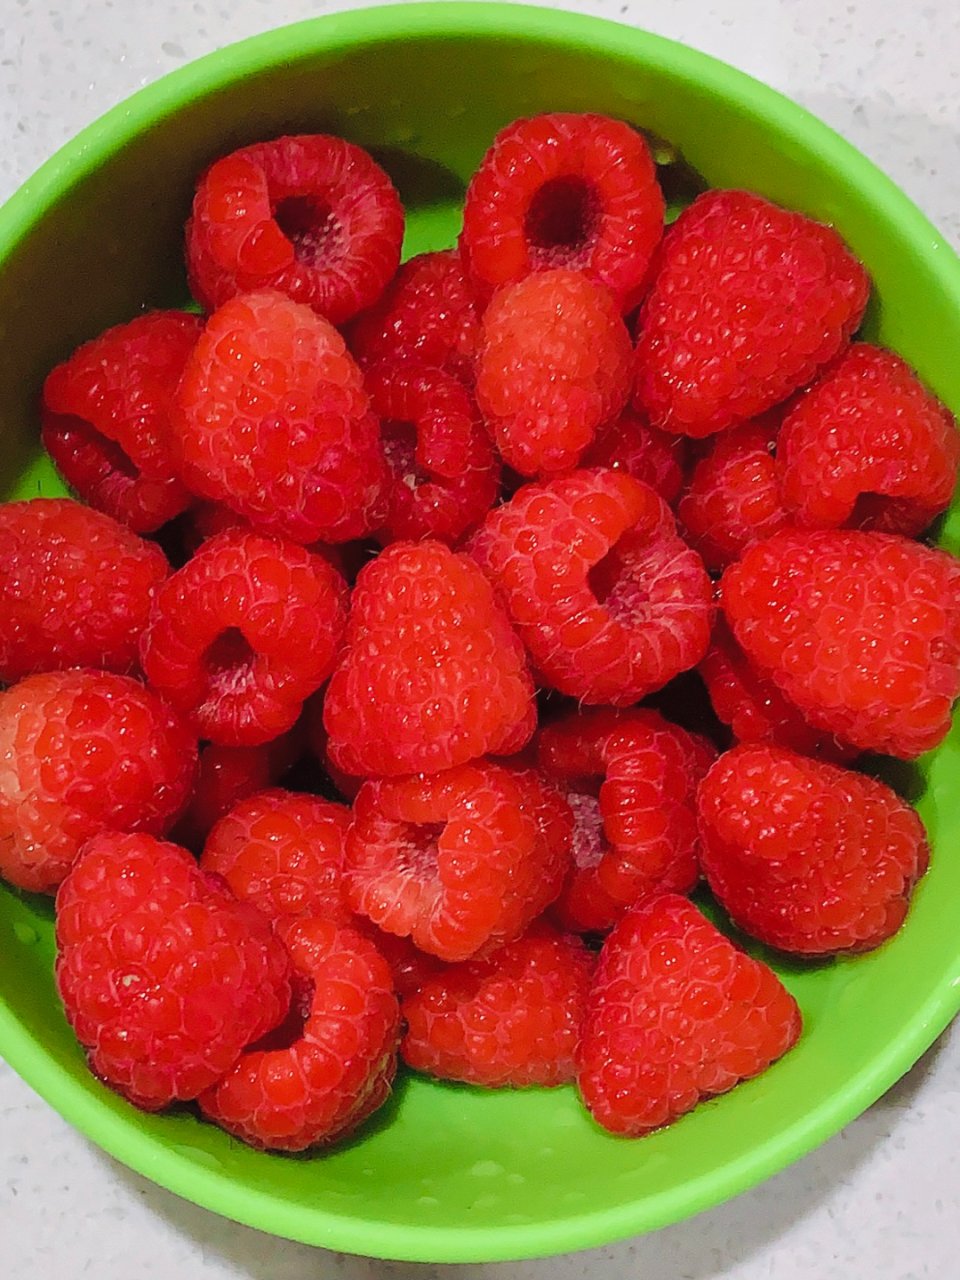 太好吃了😋红莓红莓红莓🍓...